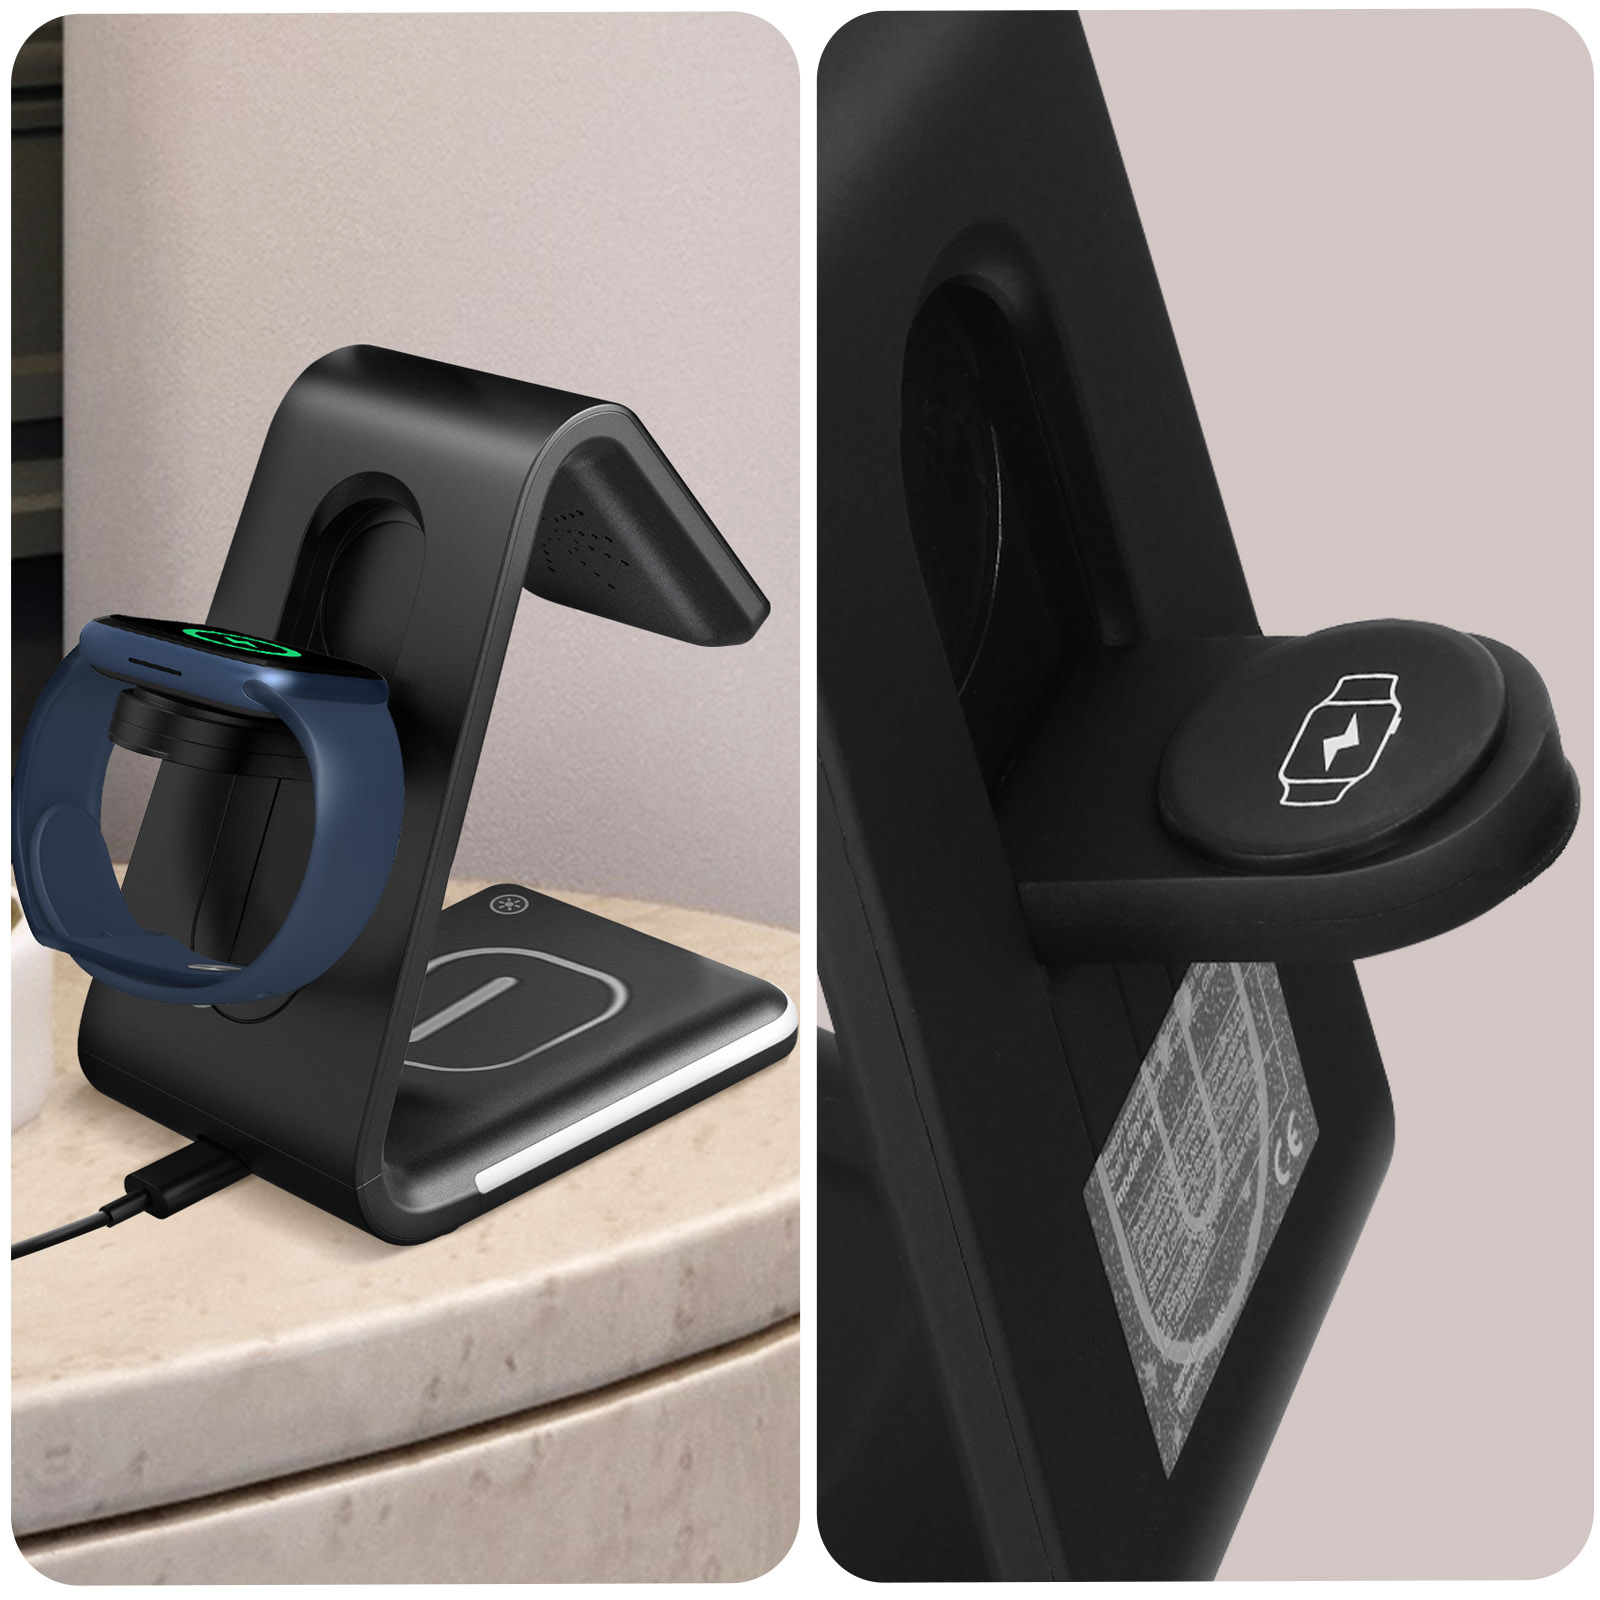 Station de Charge MagSafe avec Support pour iPhone + Chargeur Sans Fil pour  AirPods et Apple Watch - Noir - Français